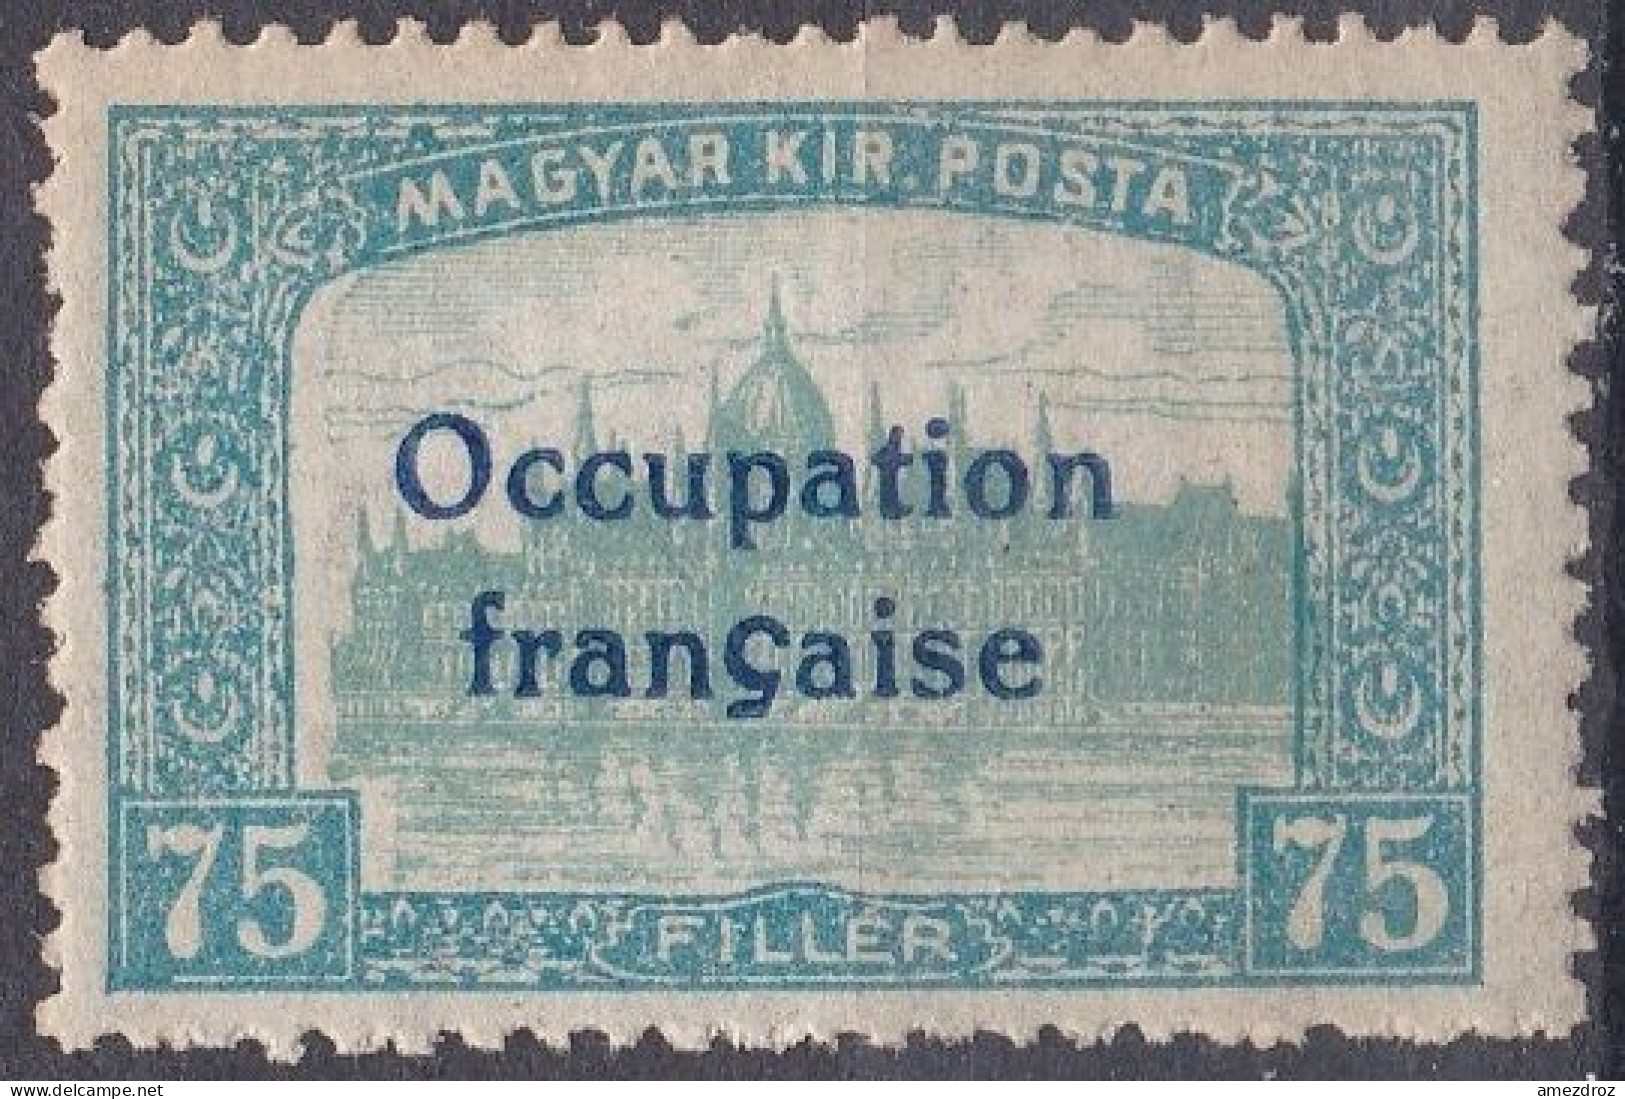 Arad Occupation Française En Hongrie Mi 19 (K6) - Unused Stamps